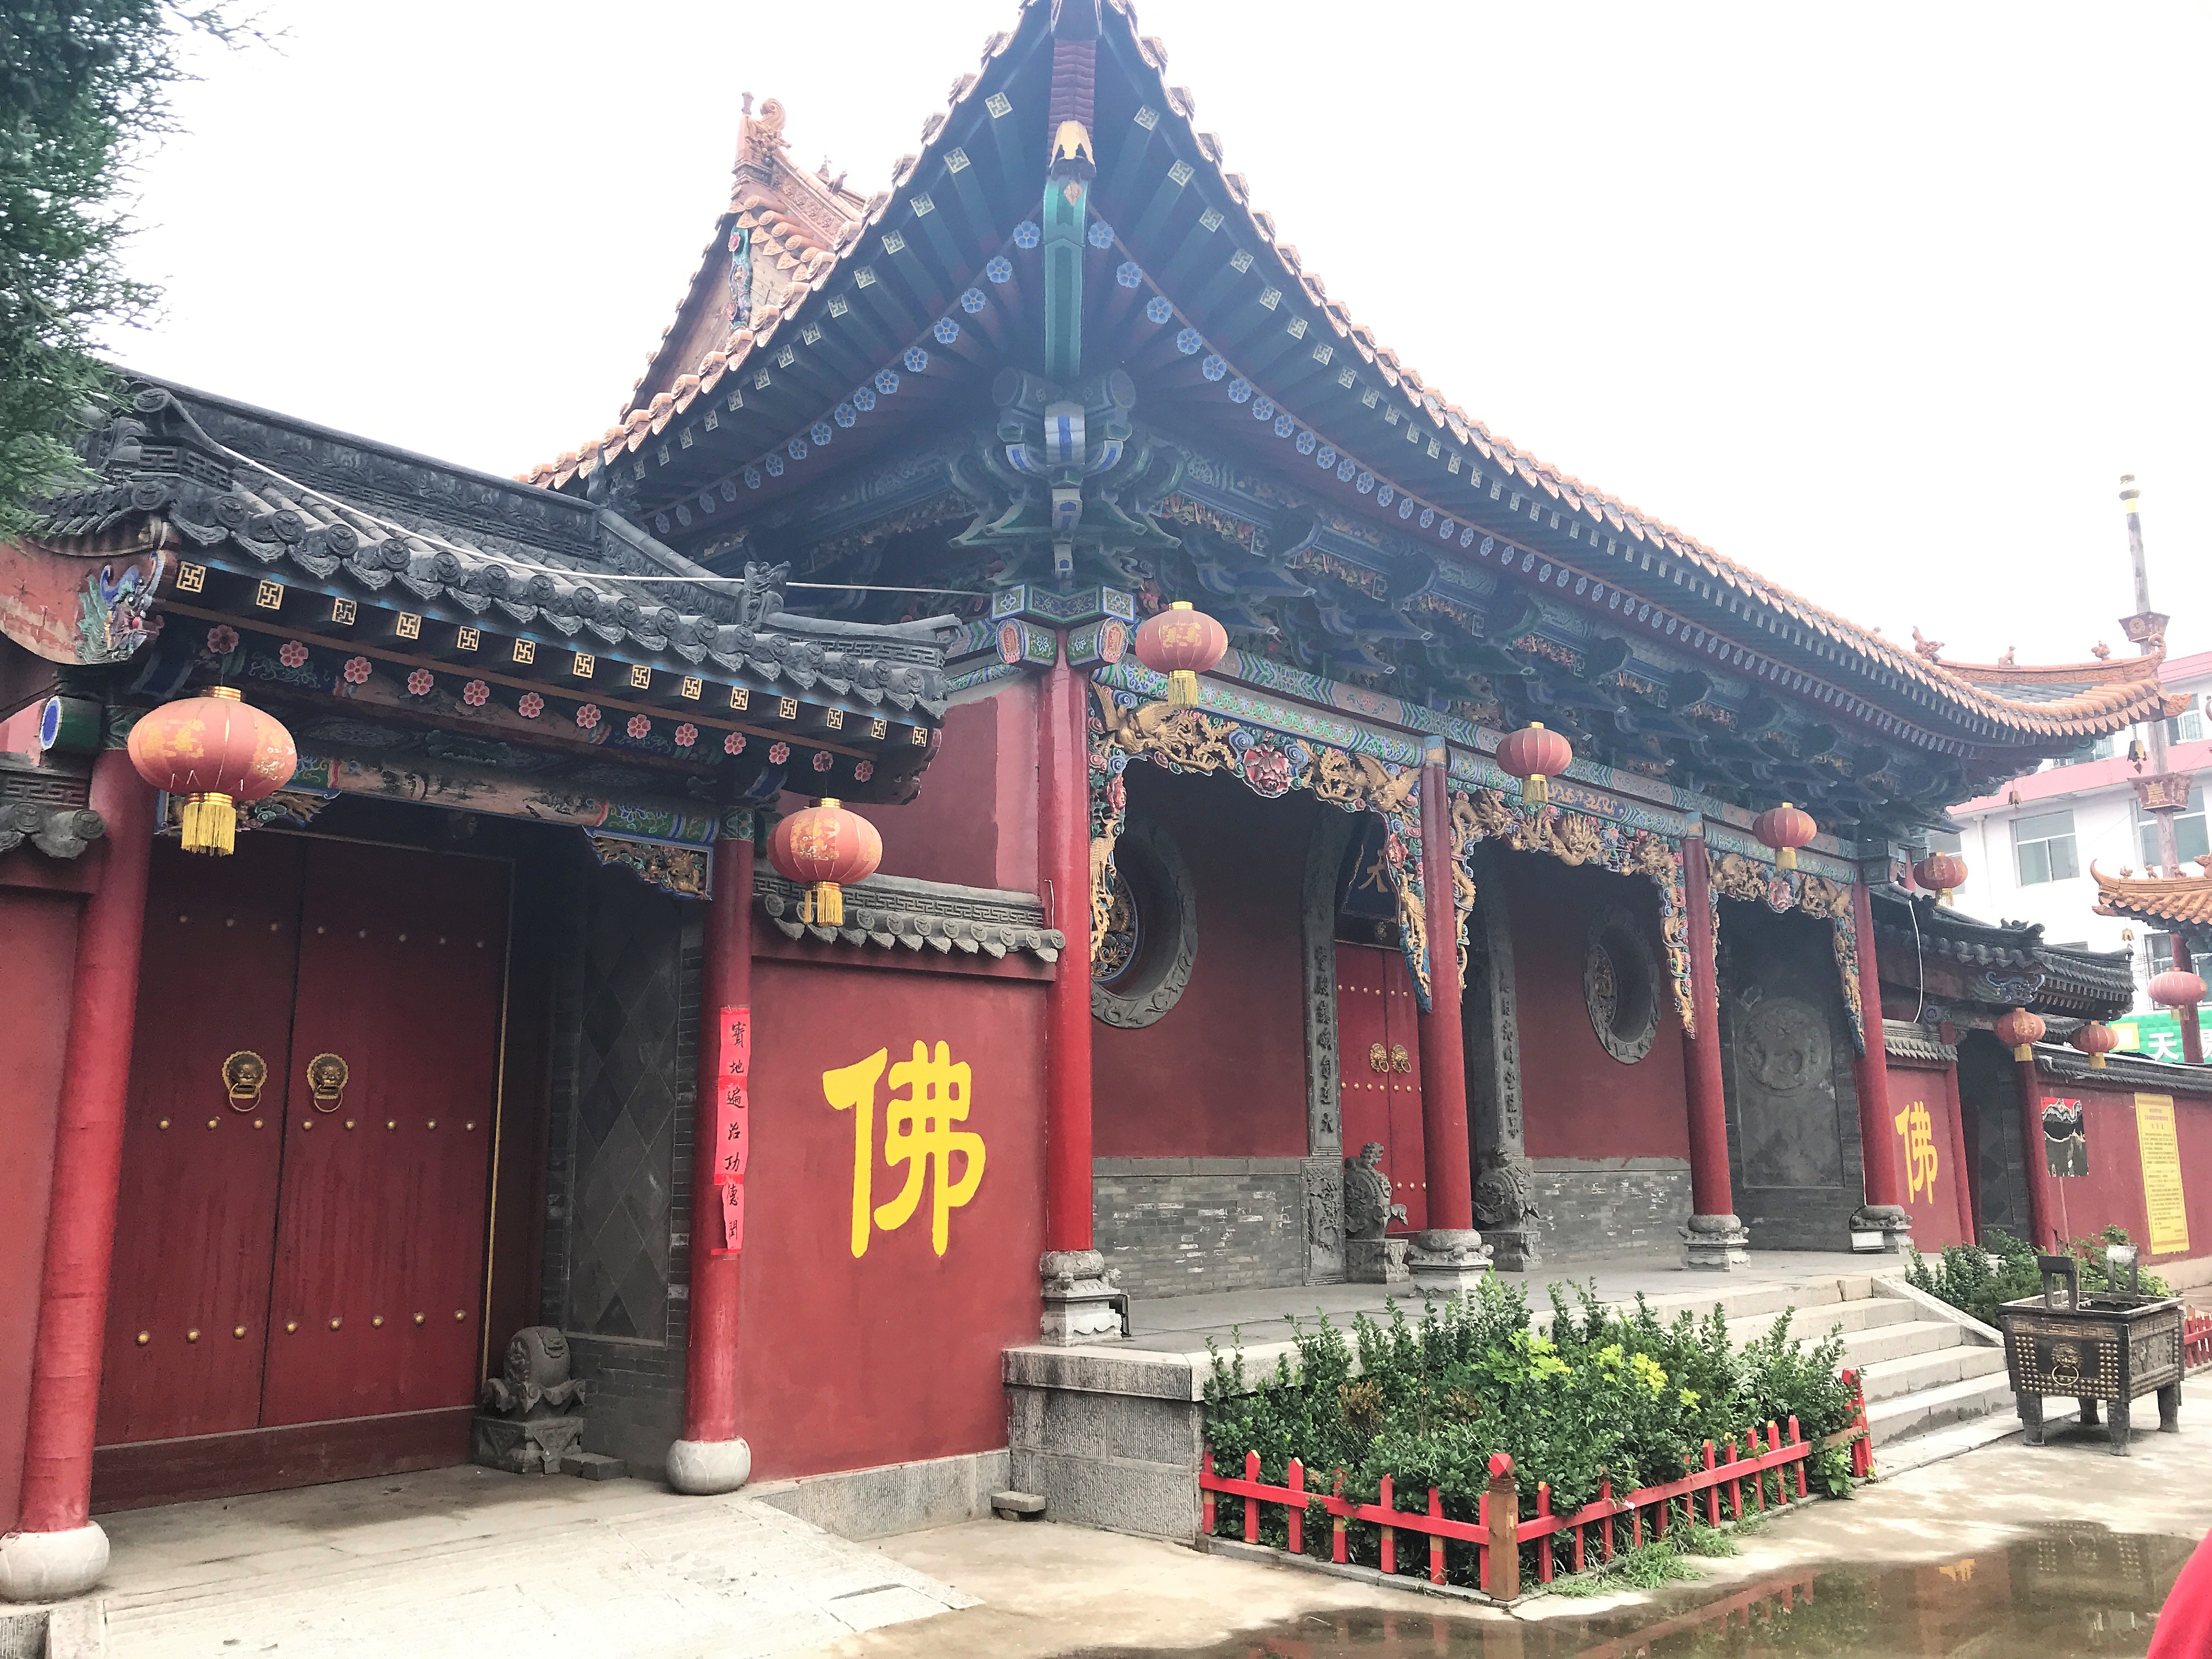 妙觉寺的山门,即天王殿寺庙坐东向西,整个占地面积约669平方米